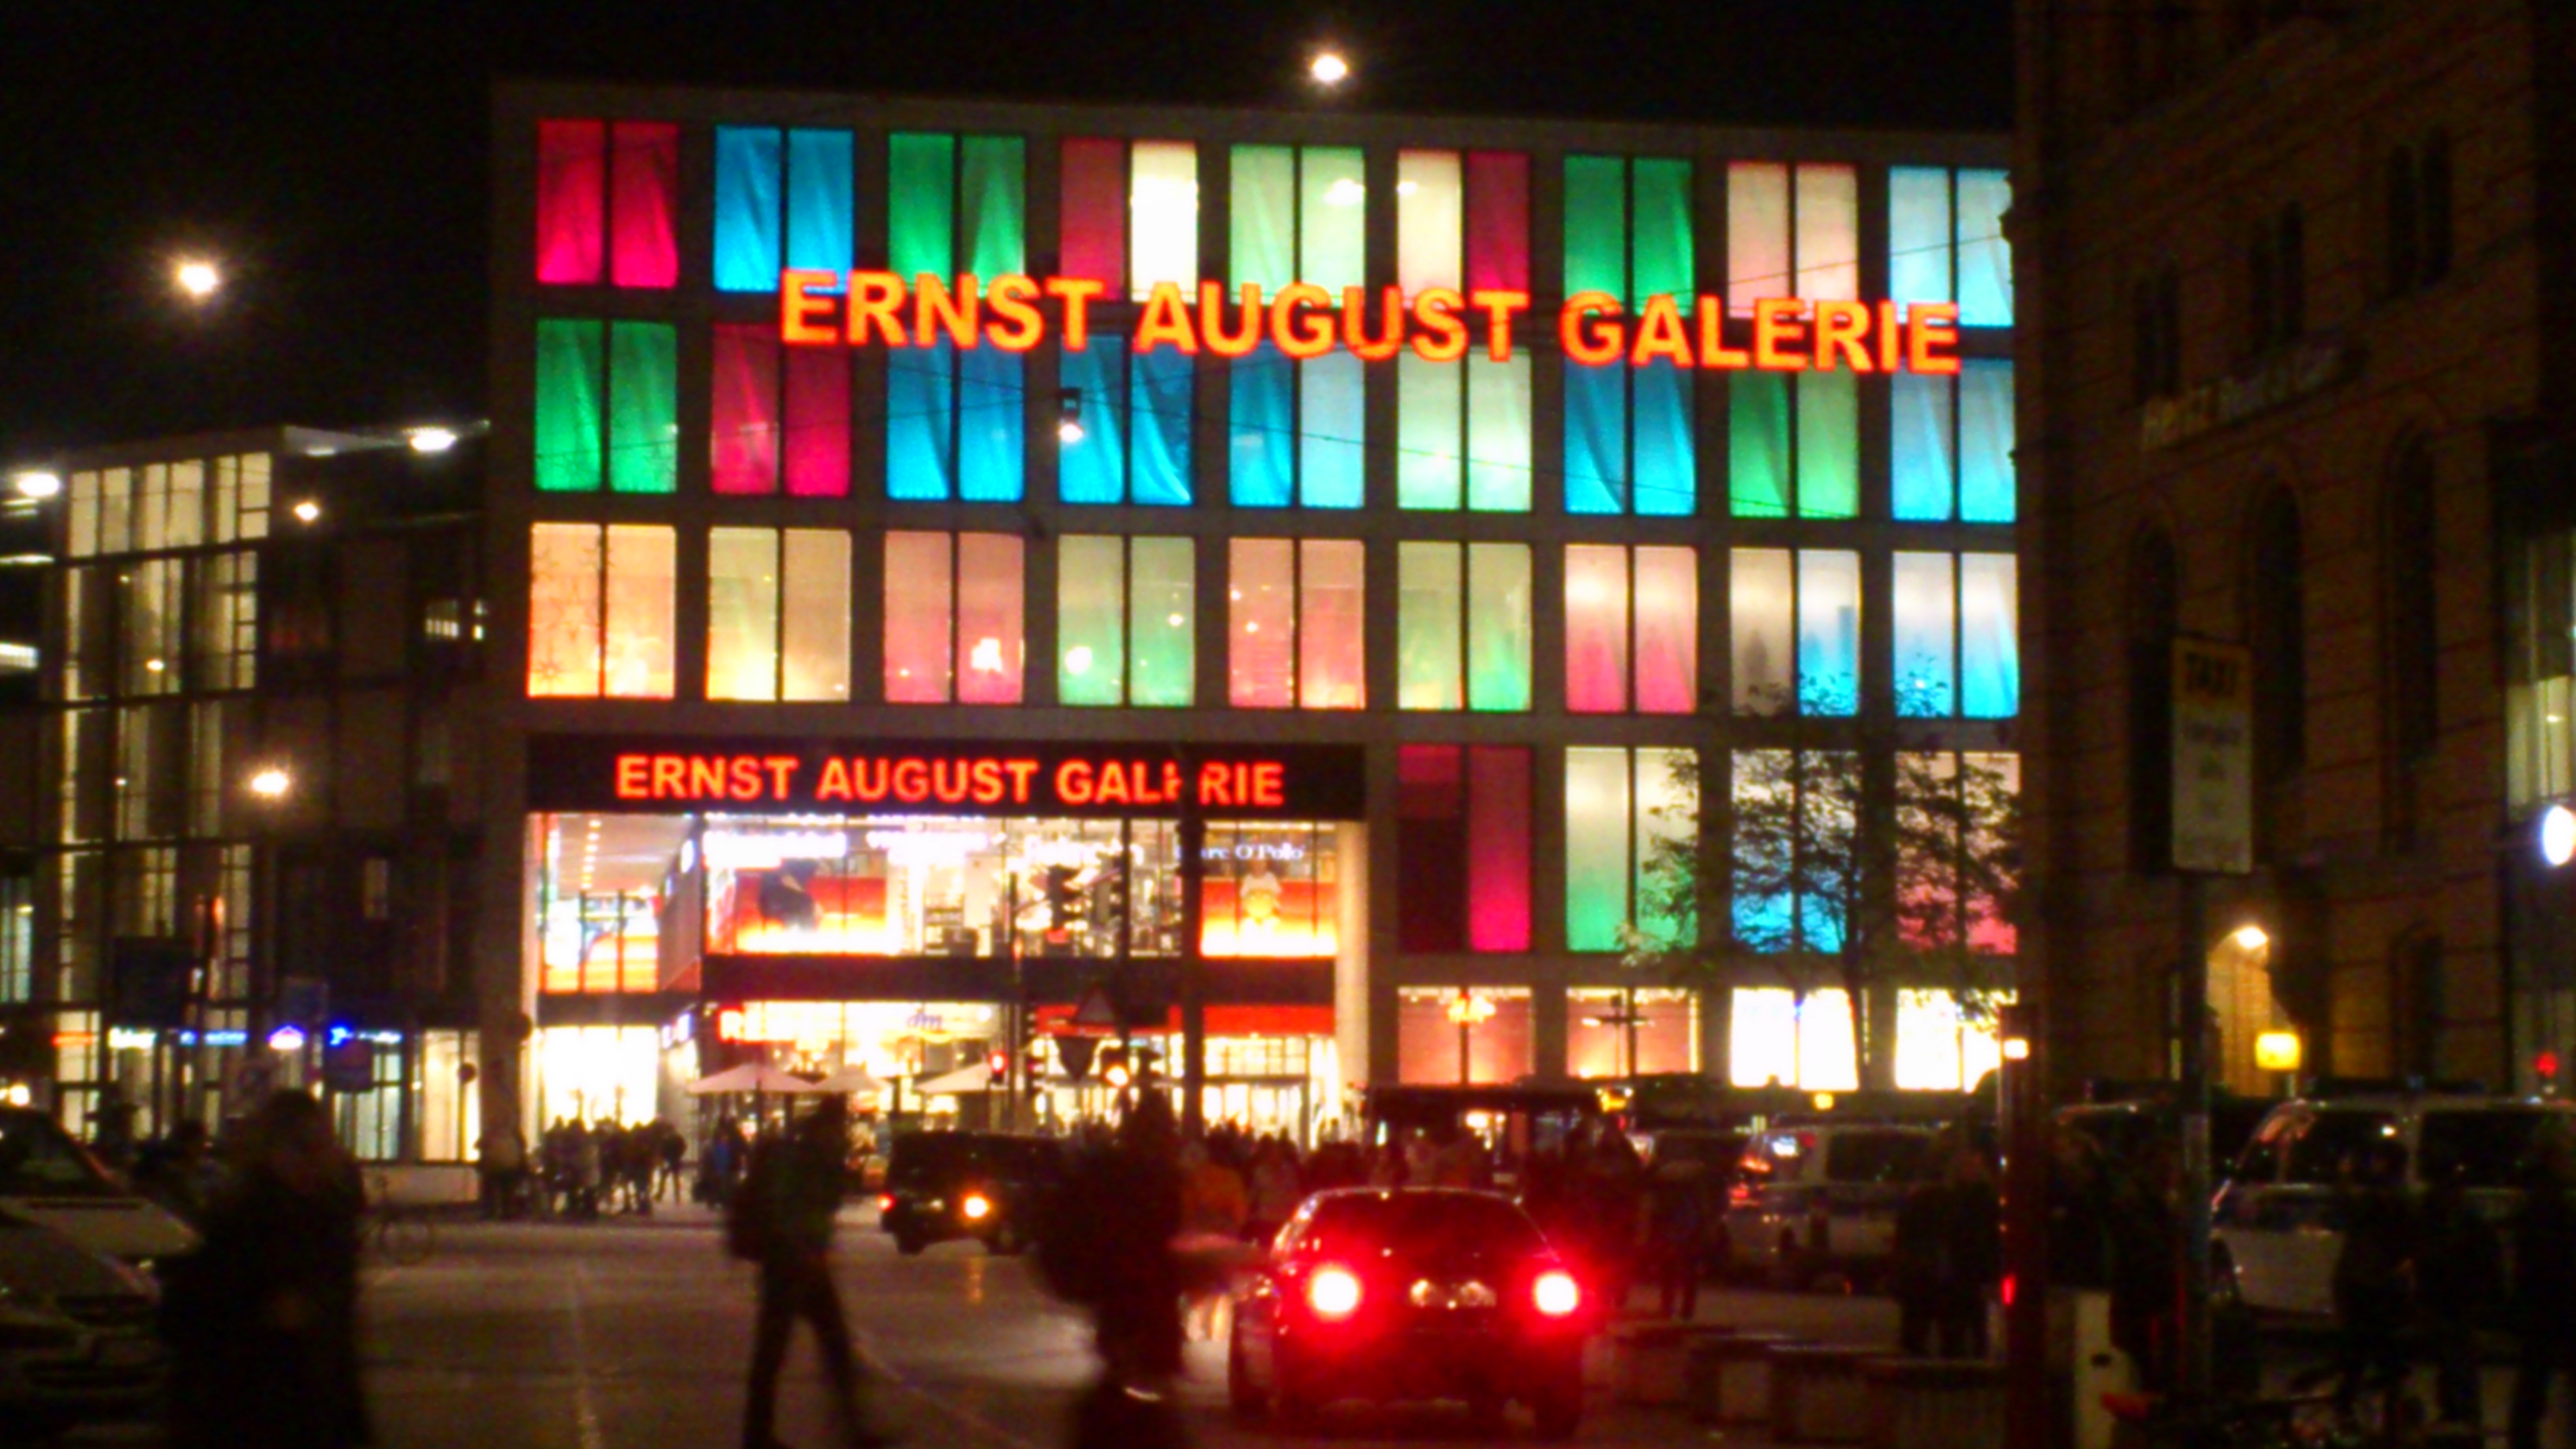 Ernst-August-galerie